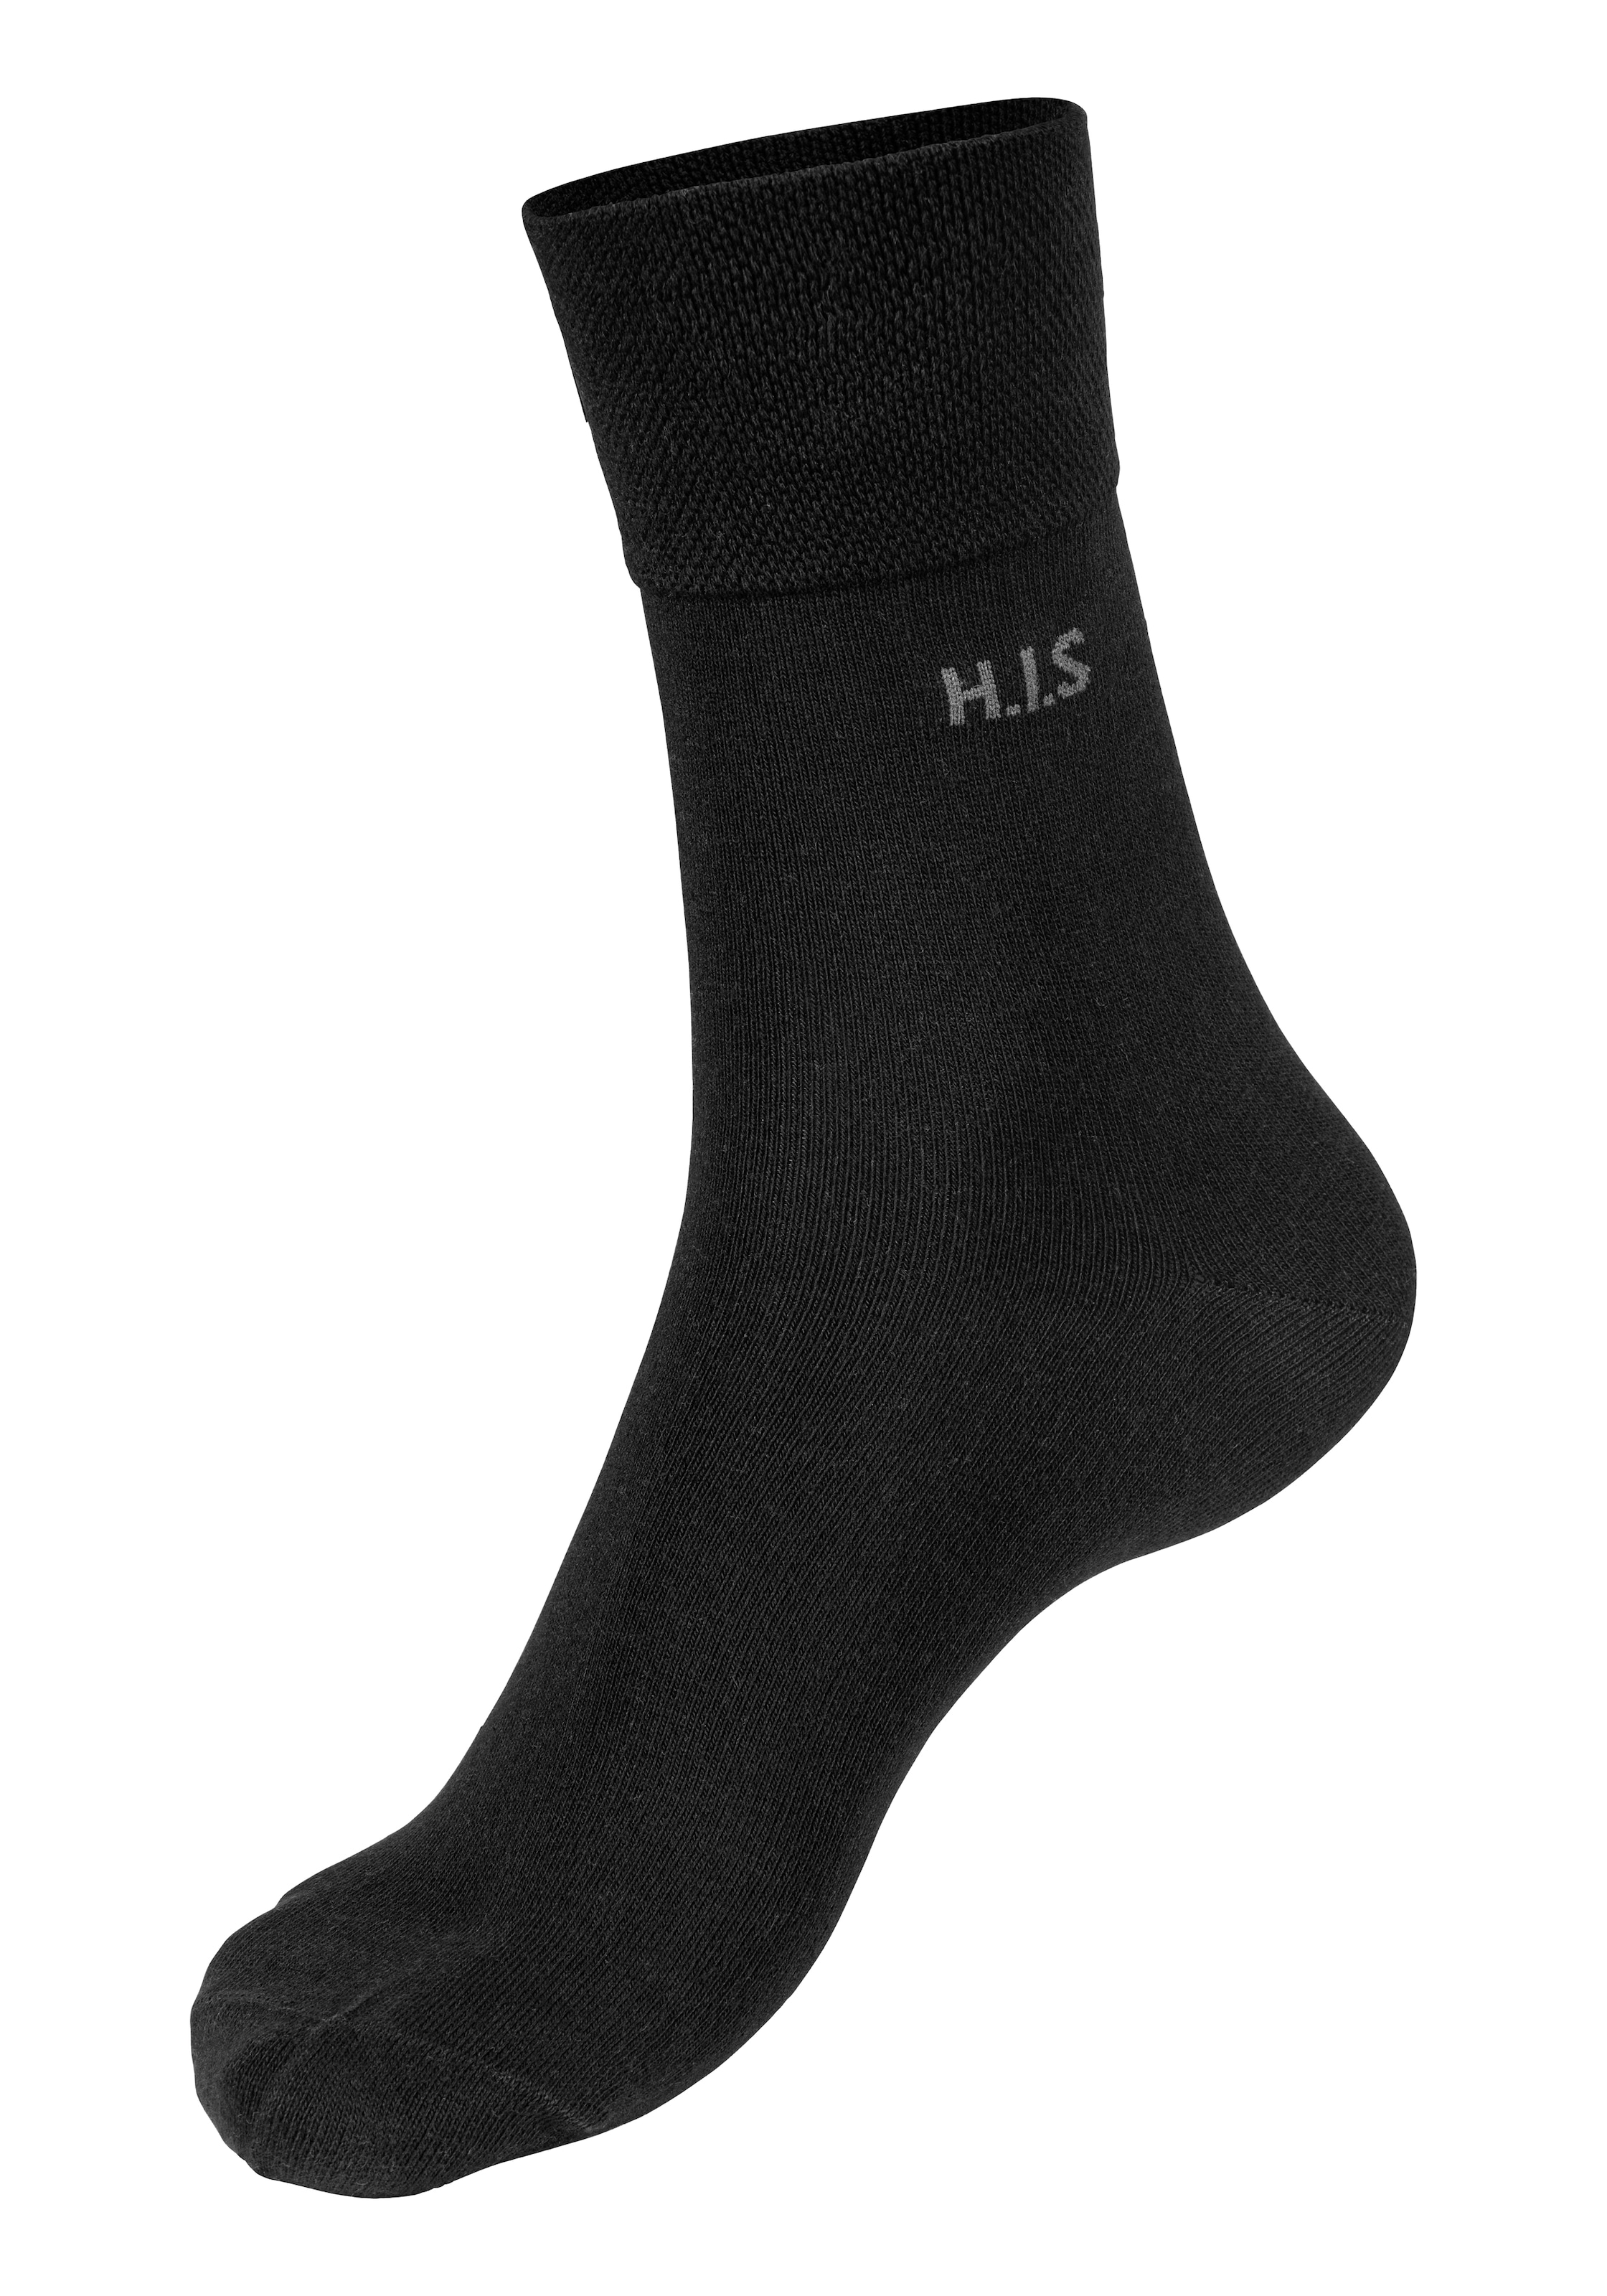 einschneidendes Gummi Socken H.I.S ohne Paar) 12 (Packung